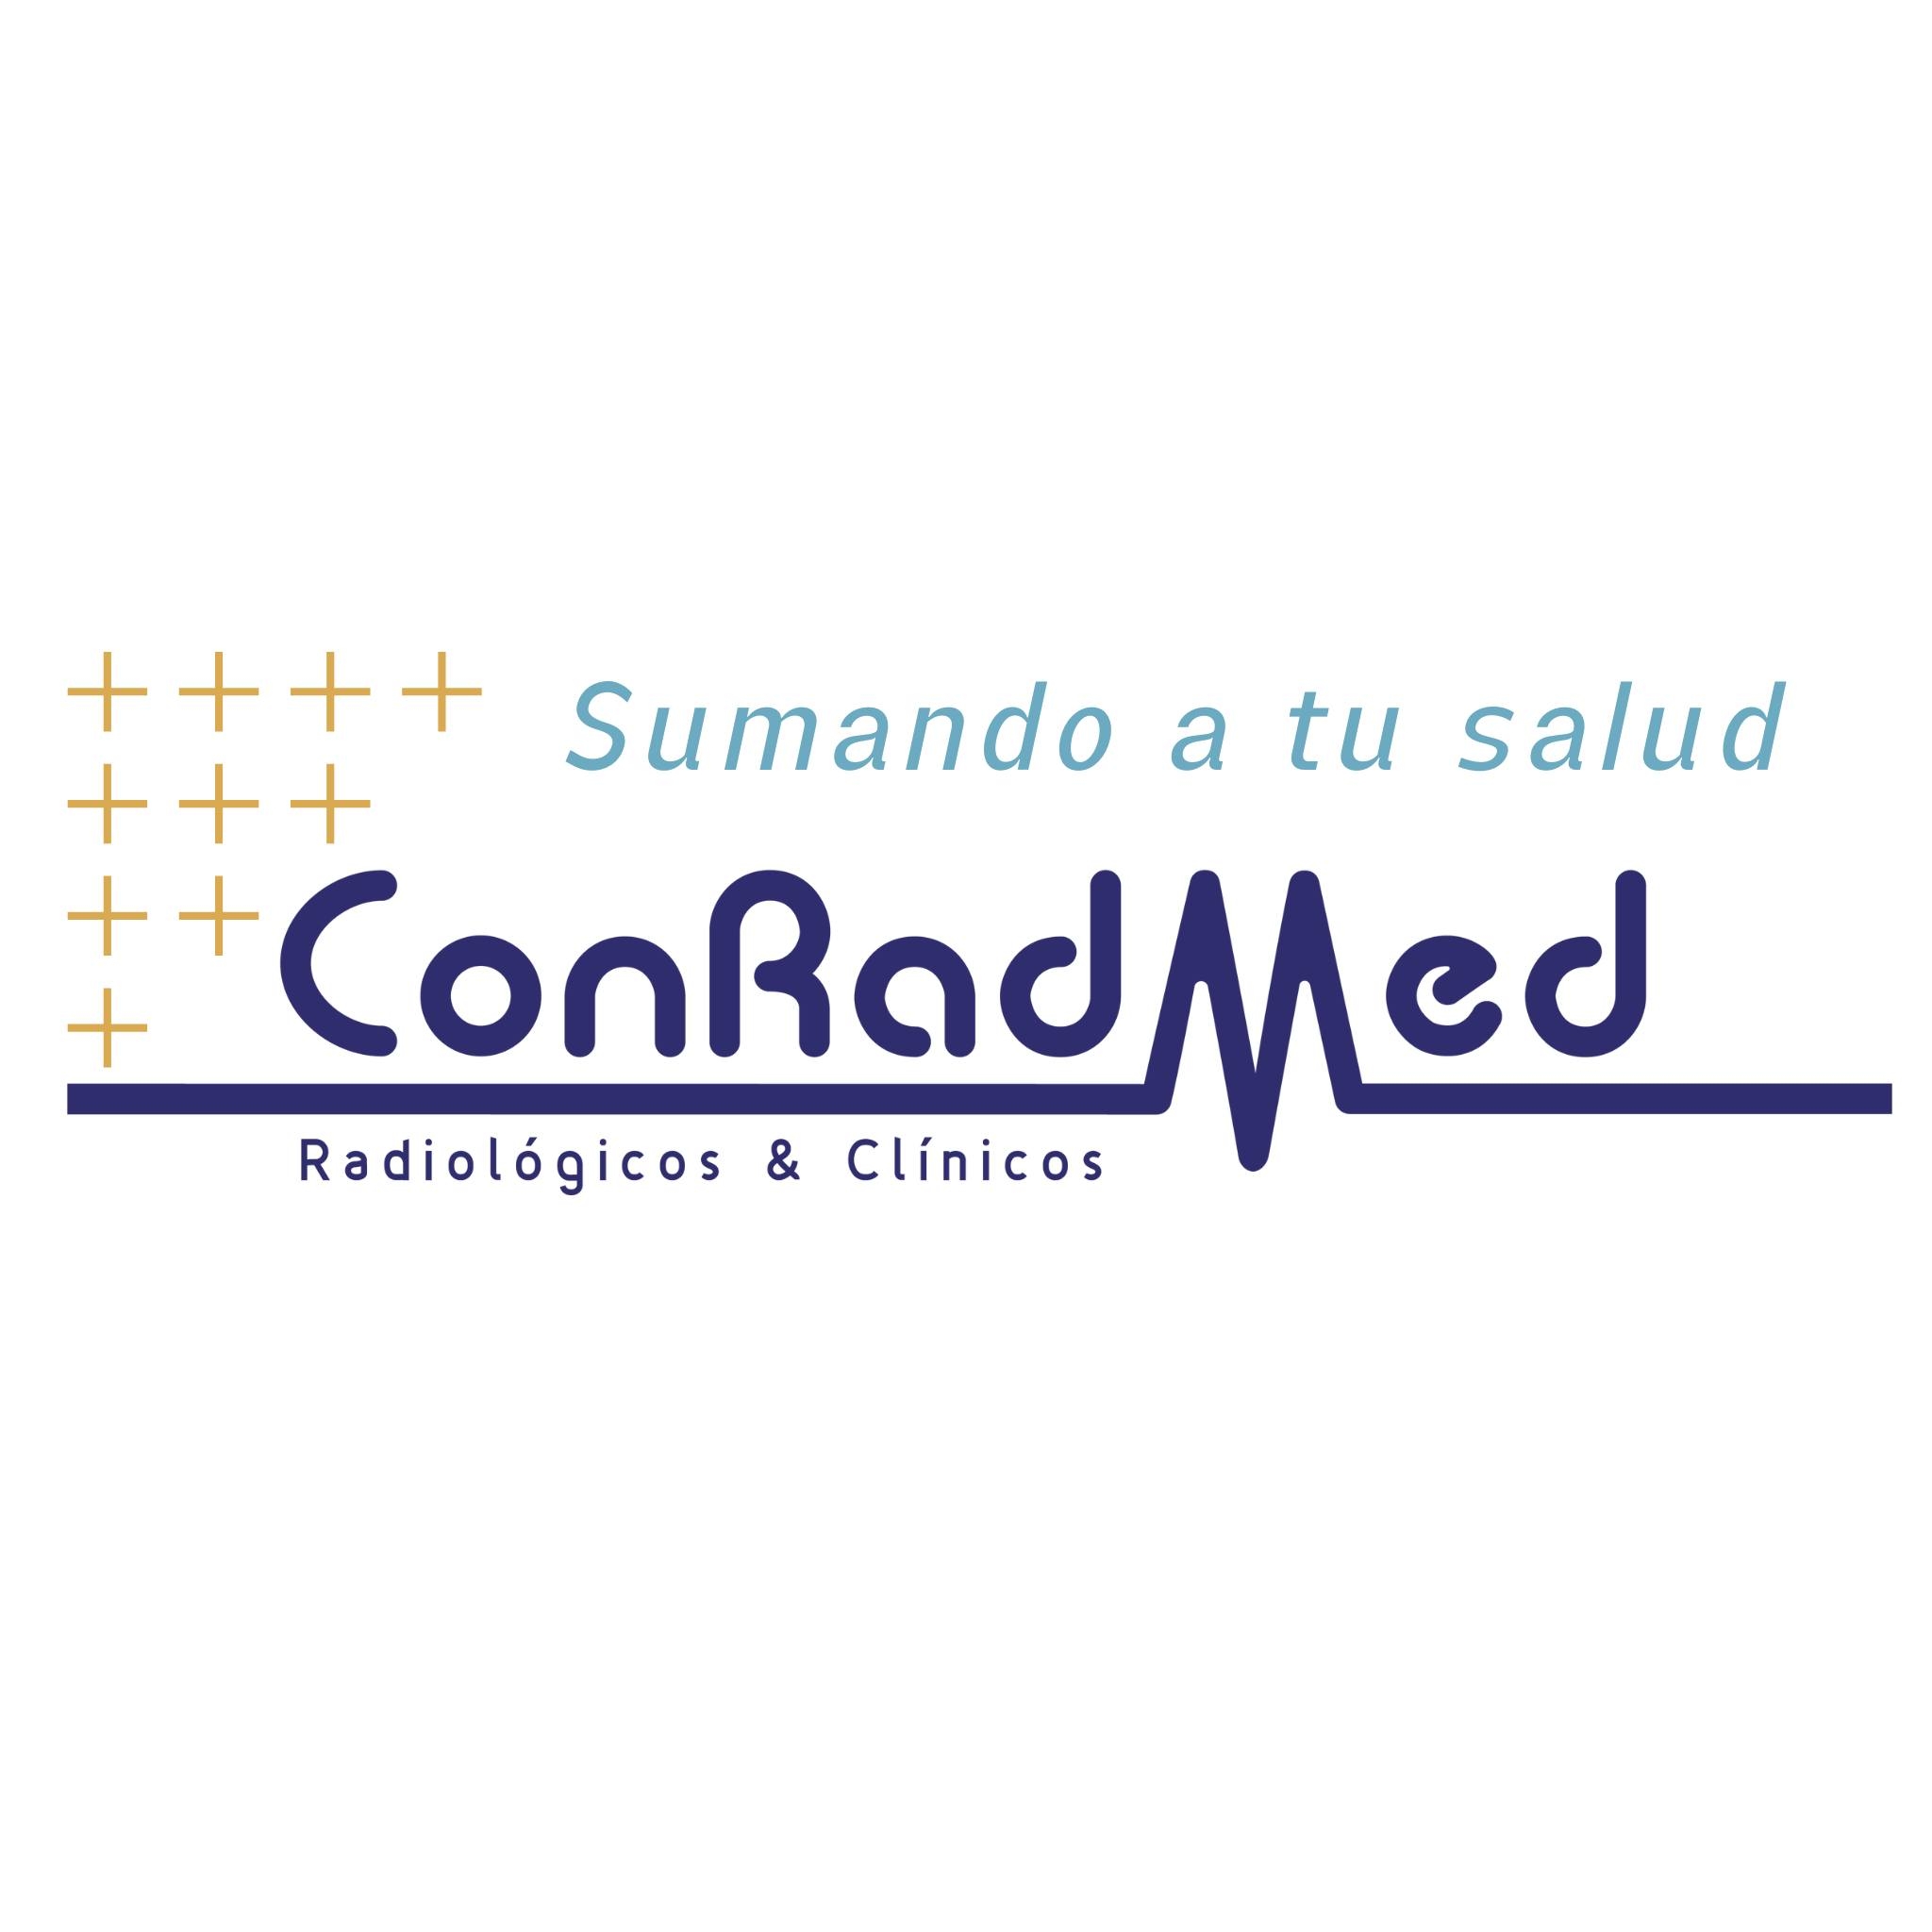 ConRadMed Radiológicos & Clínicos